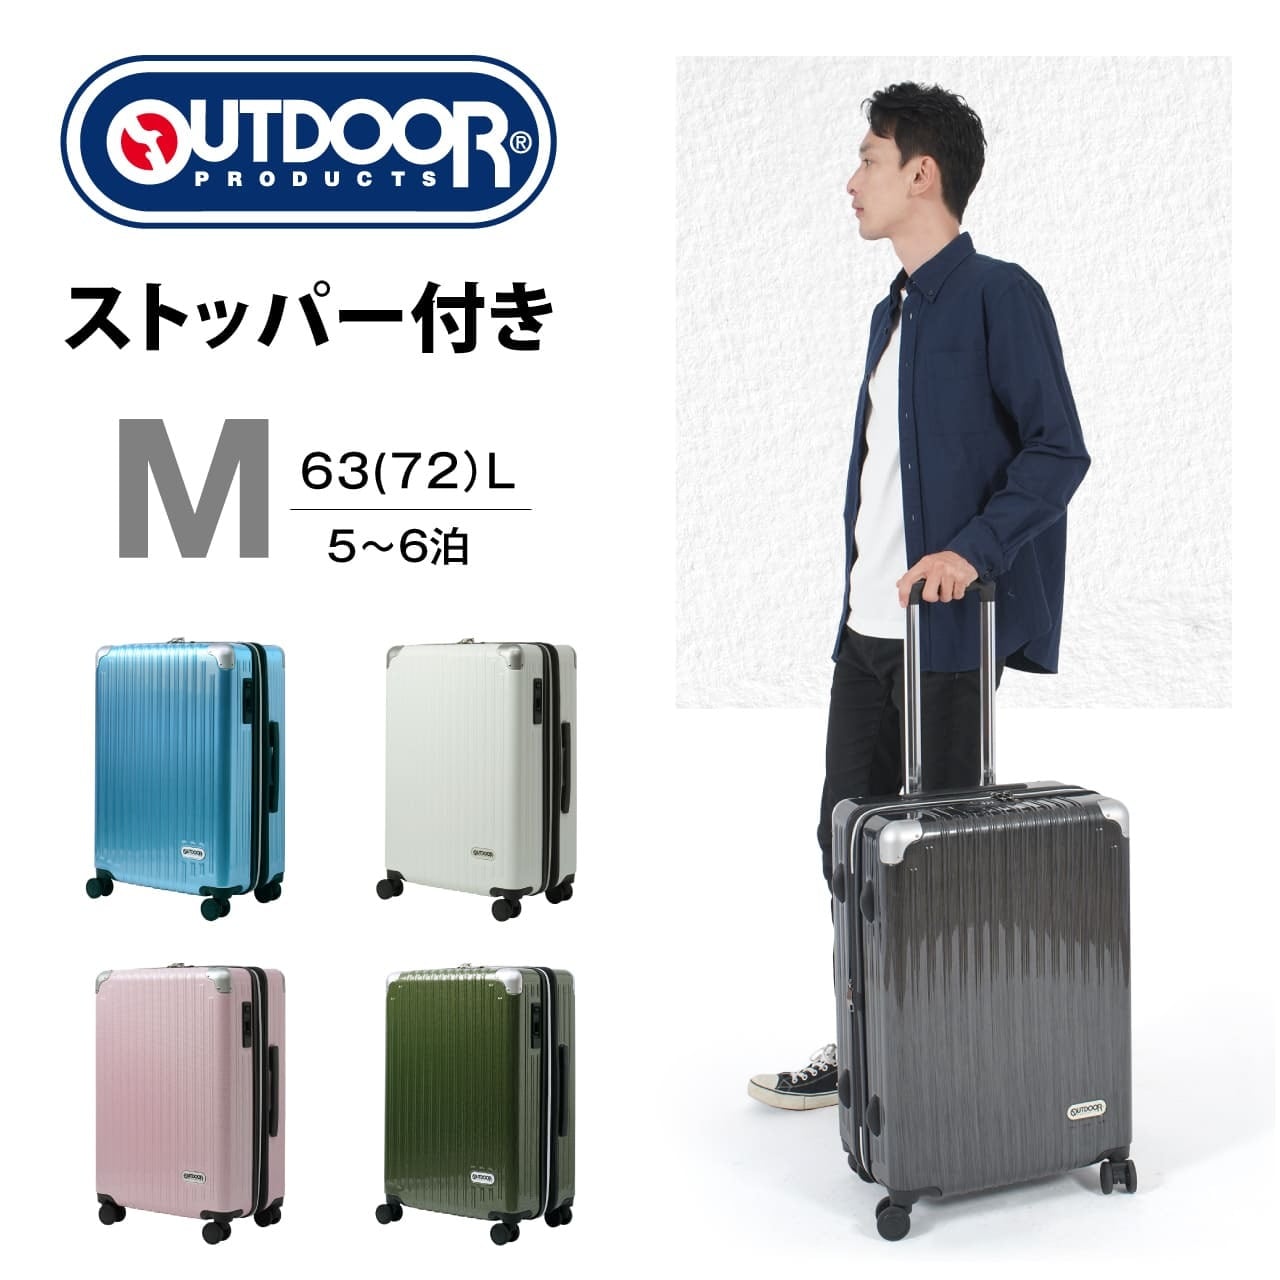 ★outdoor アウトドア スーツケース キャリーケース★